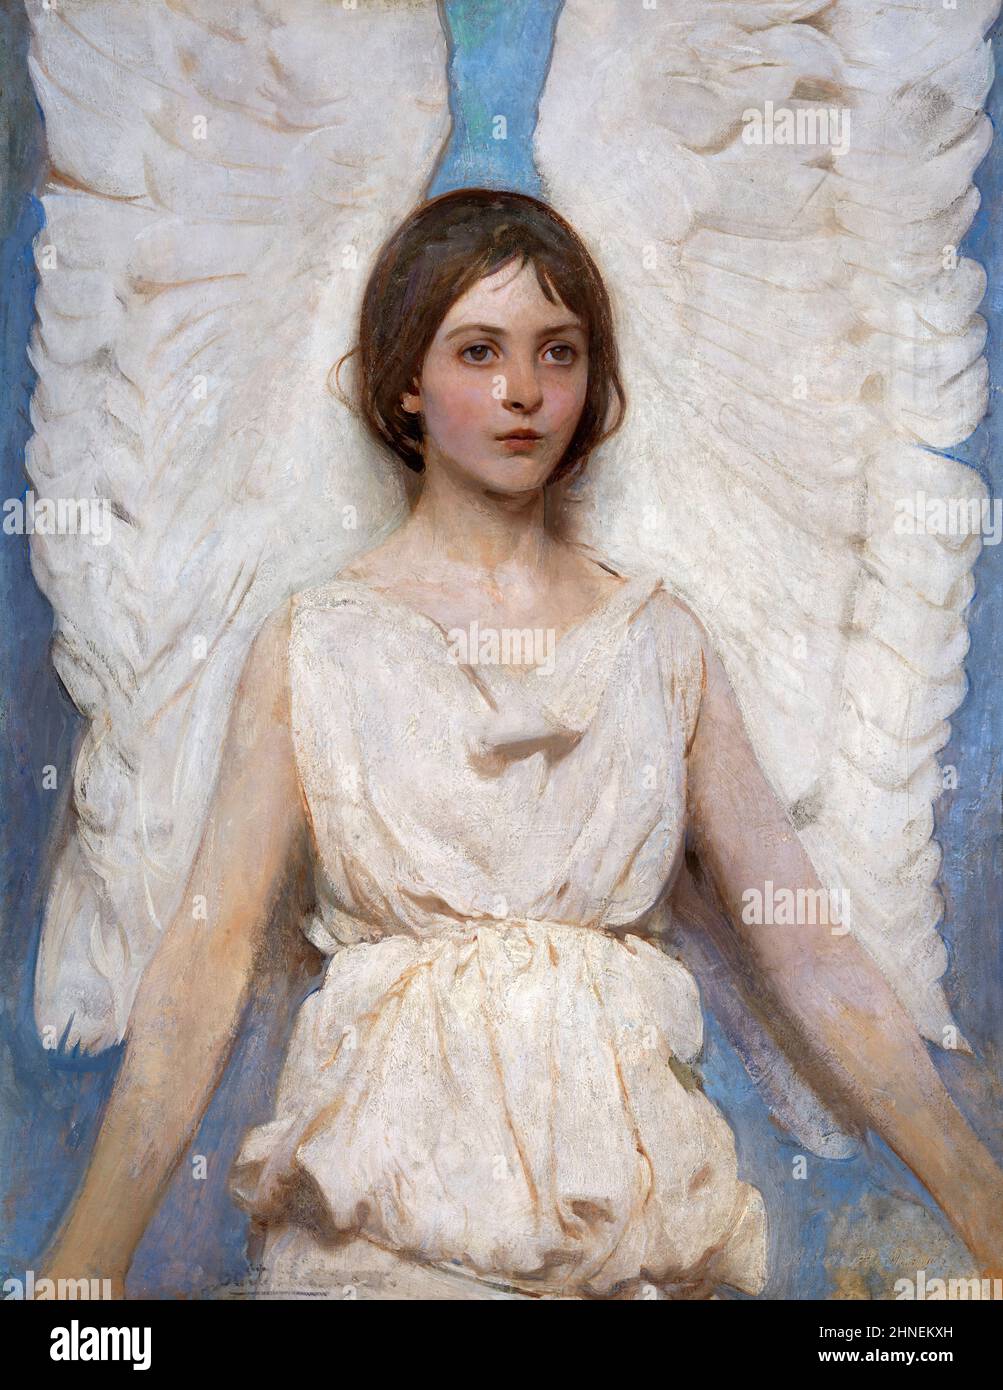 Angel par l'artiste américain Abbott Handerson Thayer (1849-1921), huile sur toile, 1887 Banque D'Images